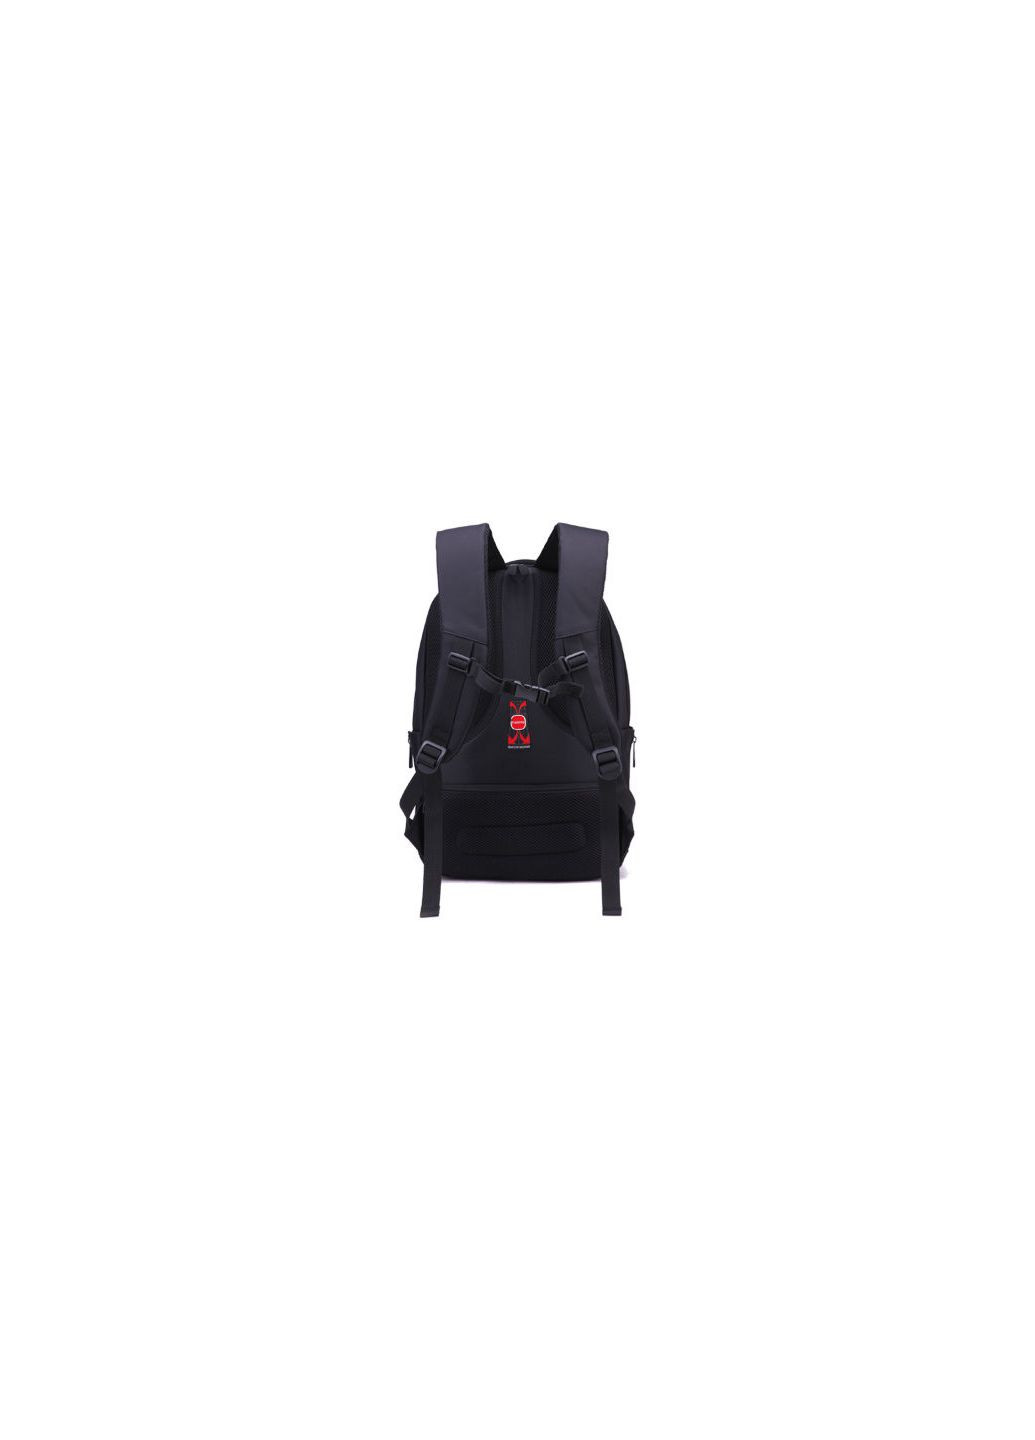 Рюкзак под ноутбуки черный с красным логотипом Tigernu (290683256)